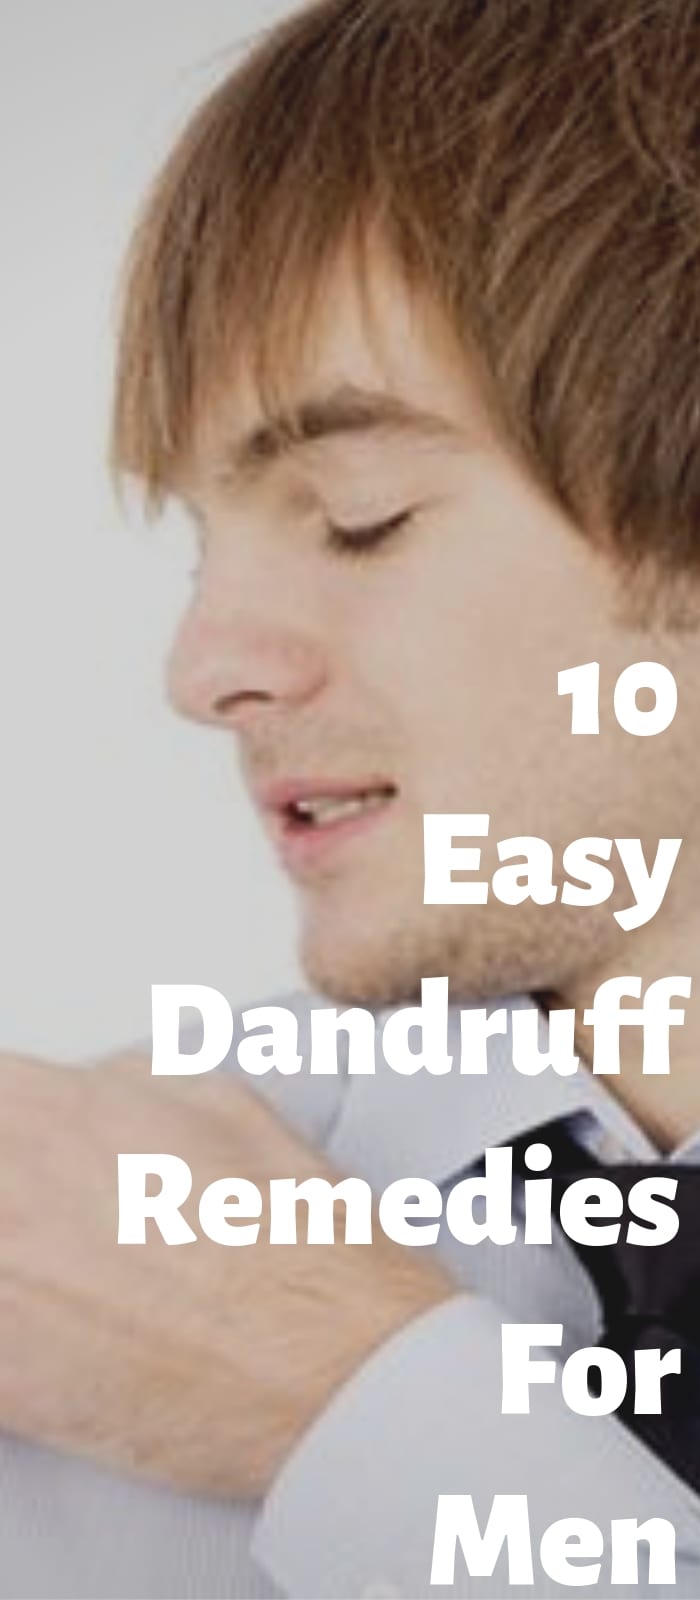 10 Easy Dandruff Remedies For Men